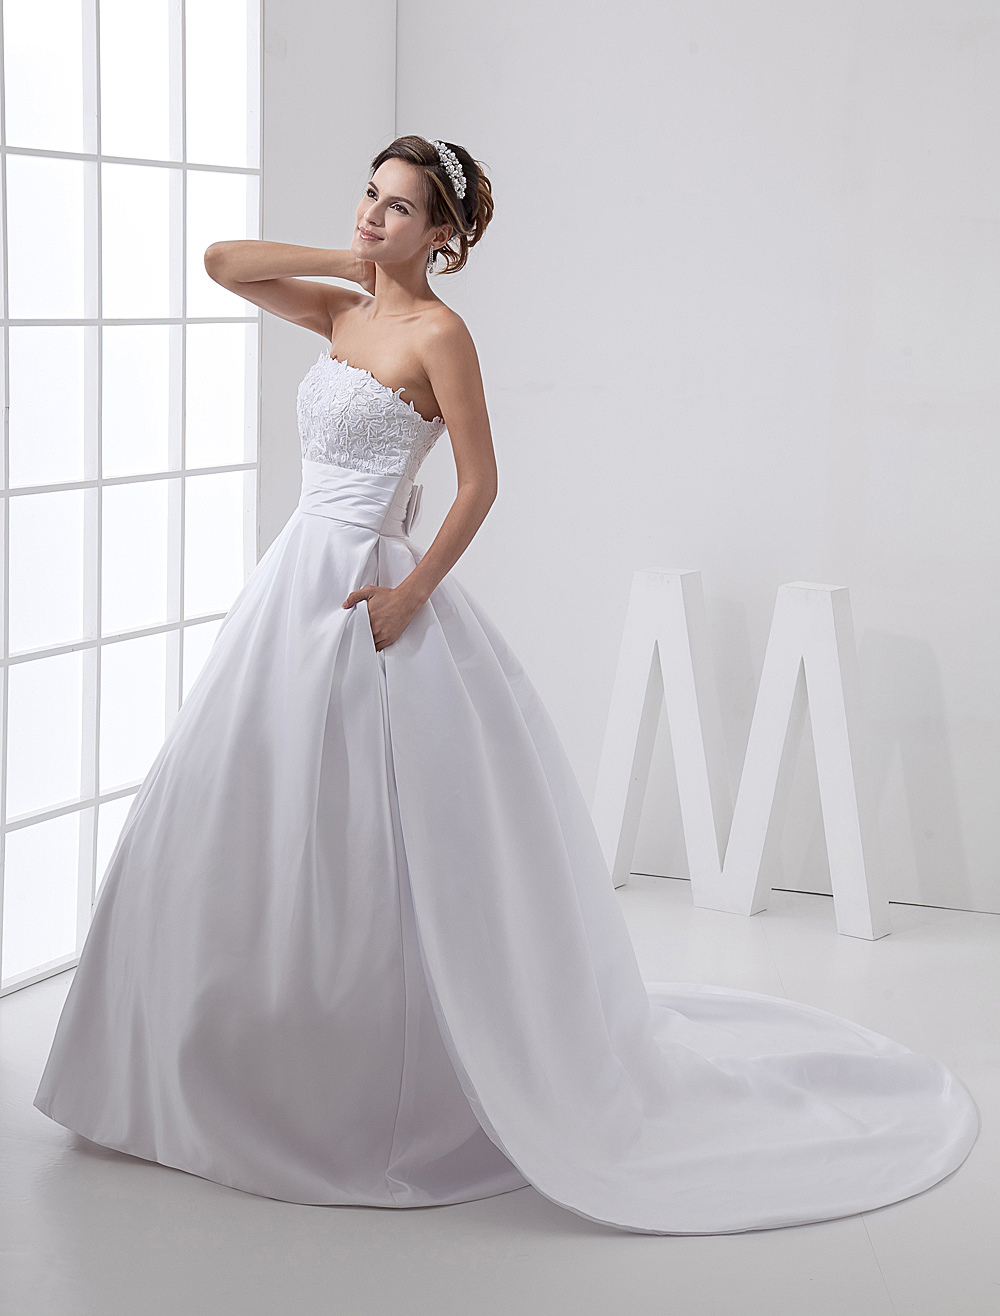 White Fantastic Satin A-line Strapless Wedding Dress - Milanoo.com